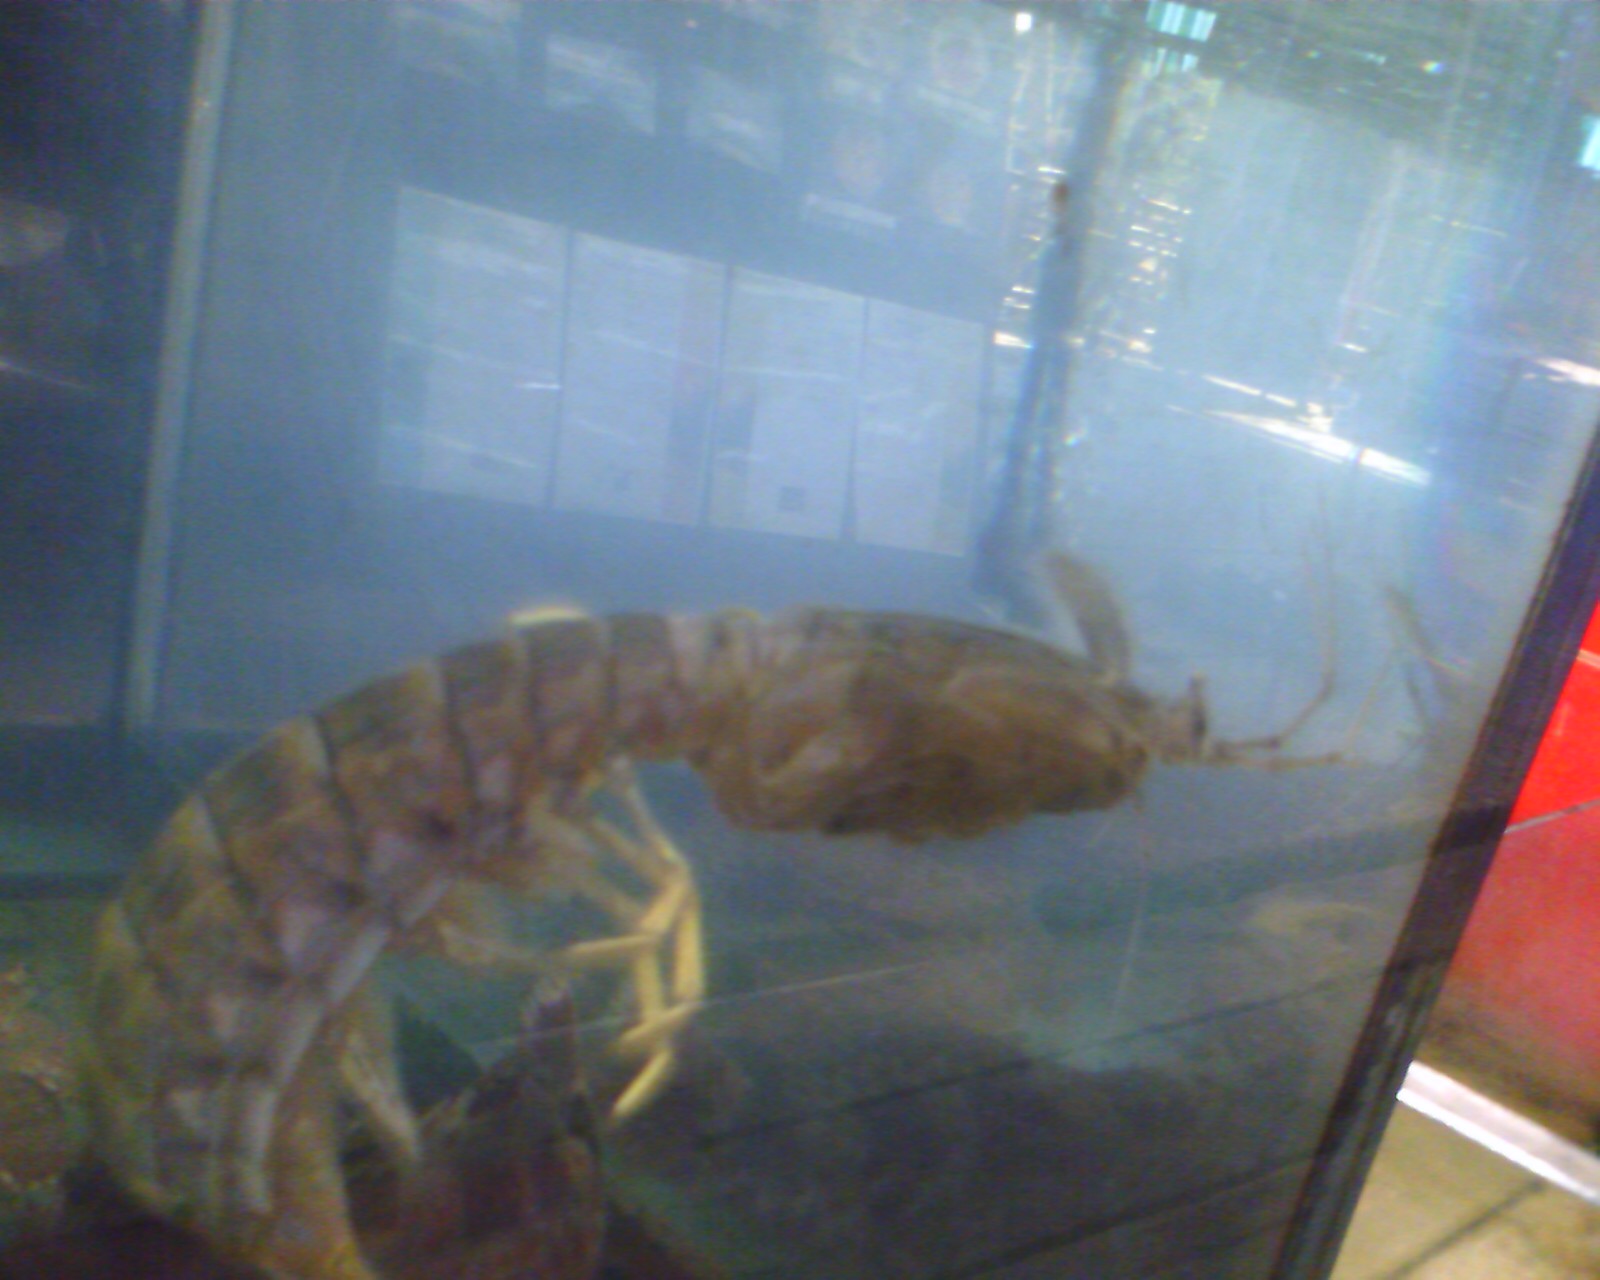 a dead shrimp in a glass filled aquarium